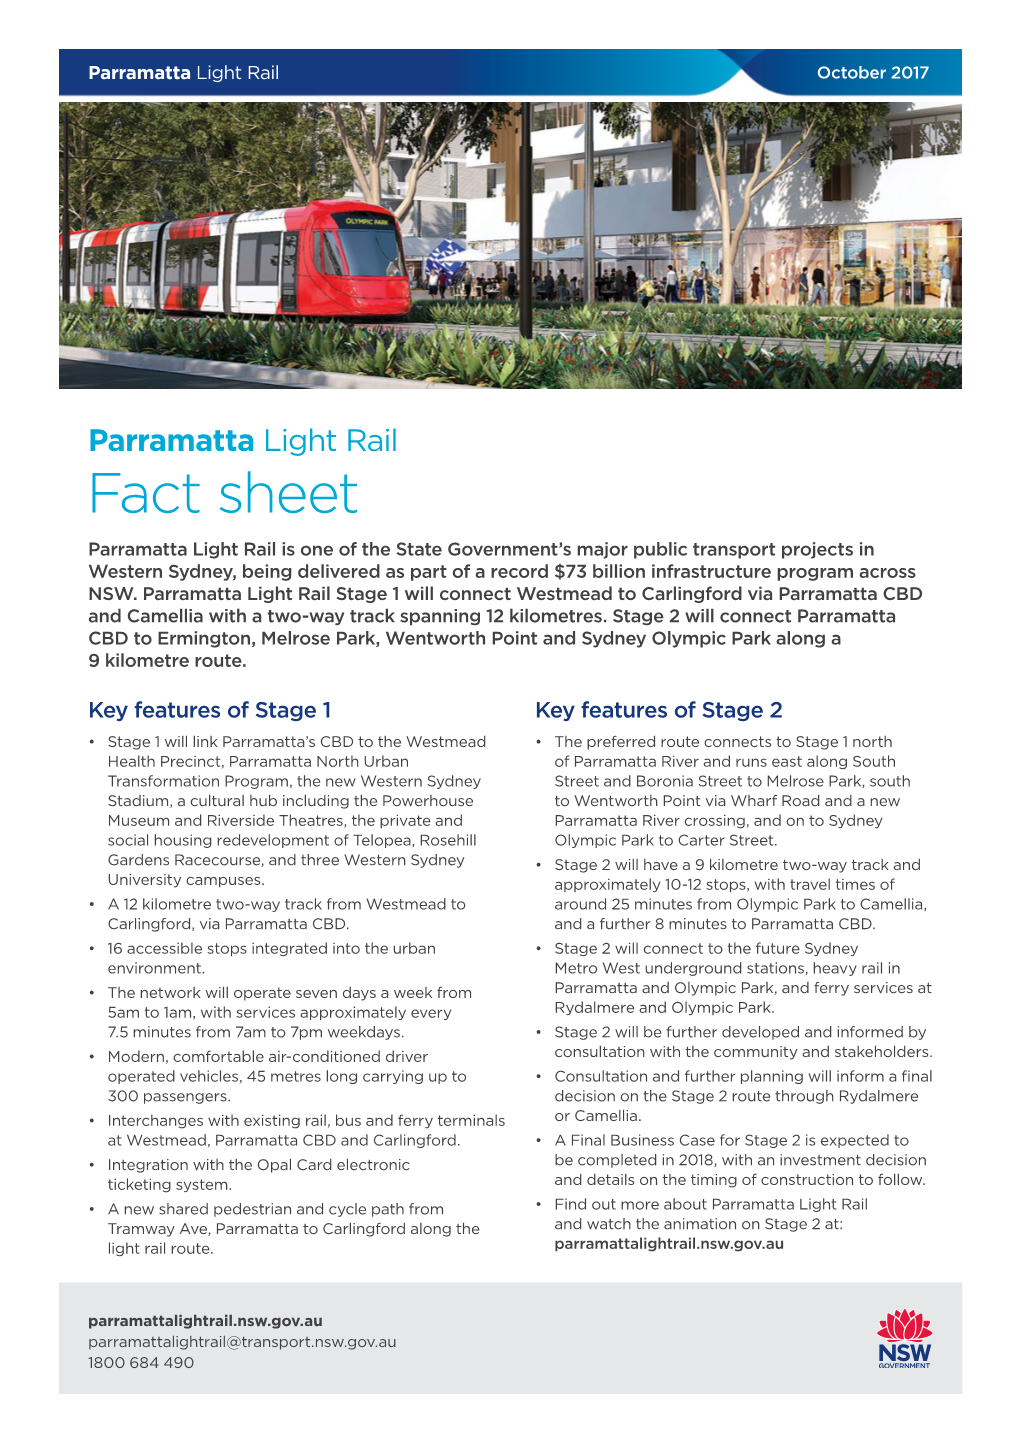 Parramatta Light Rail Stage 2 Fact Sheet